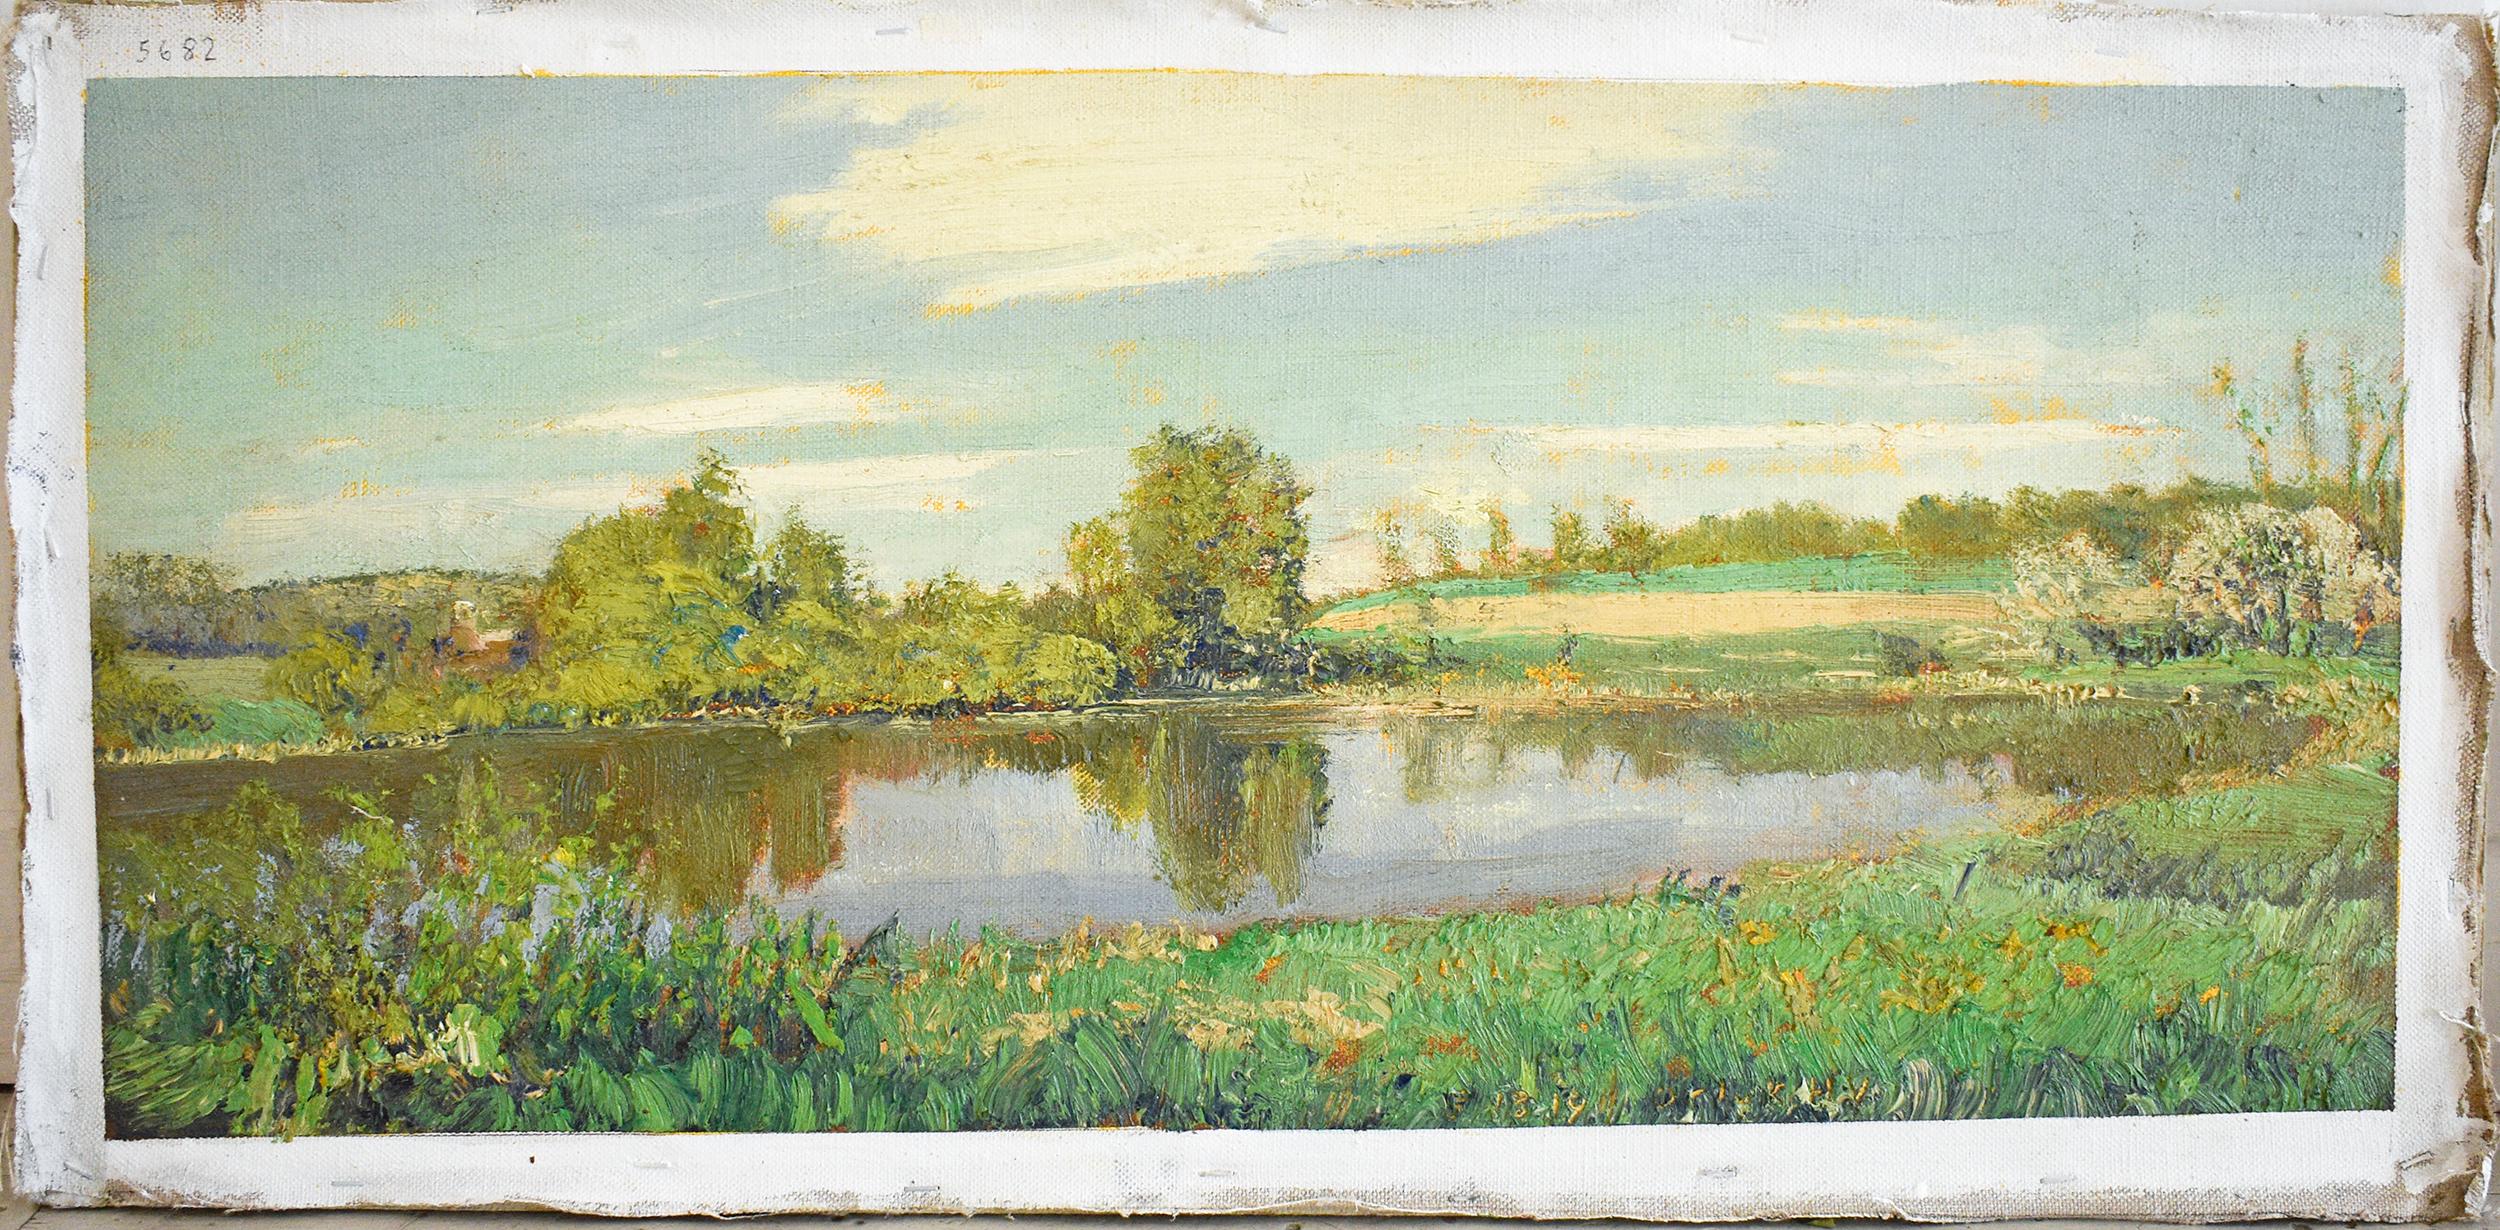 #5682 McKernon Road: Impressionistisches Sommerlandschaftsgemälde En Plein Air  – Painting von Harry Orlyk